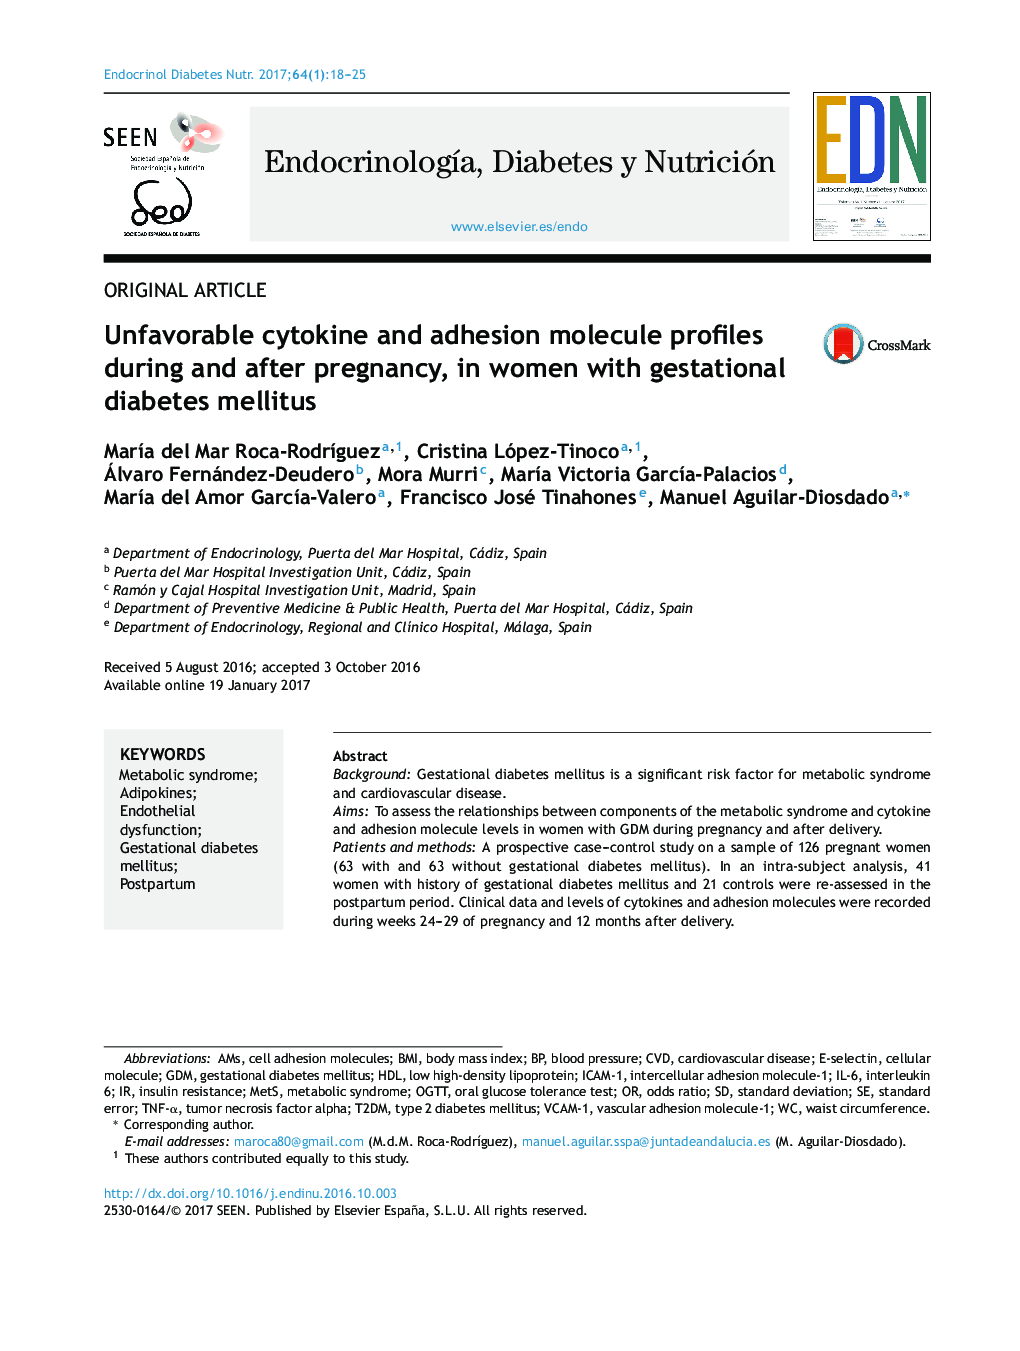 پروفسورهای سیتوکین نامطلوب و مولکول چسبندگی در طول و بعد از بارداری در زنان مبتلا به دیابت بارداری 